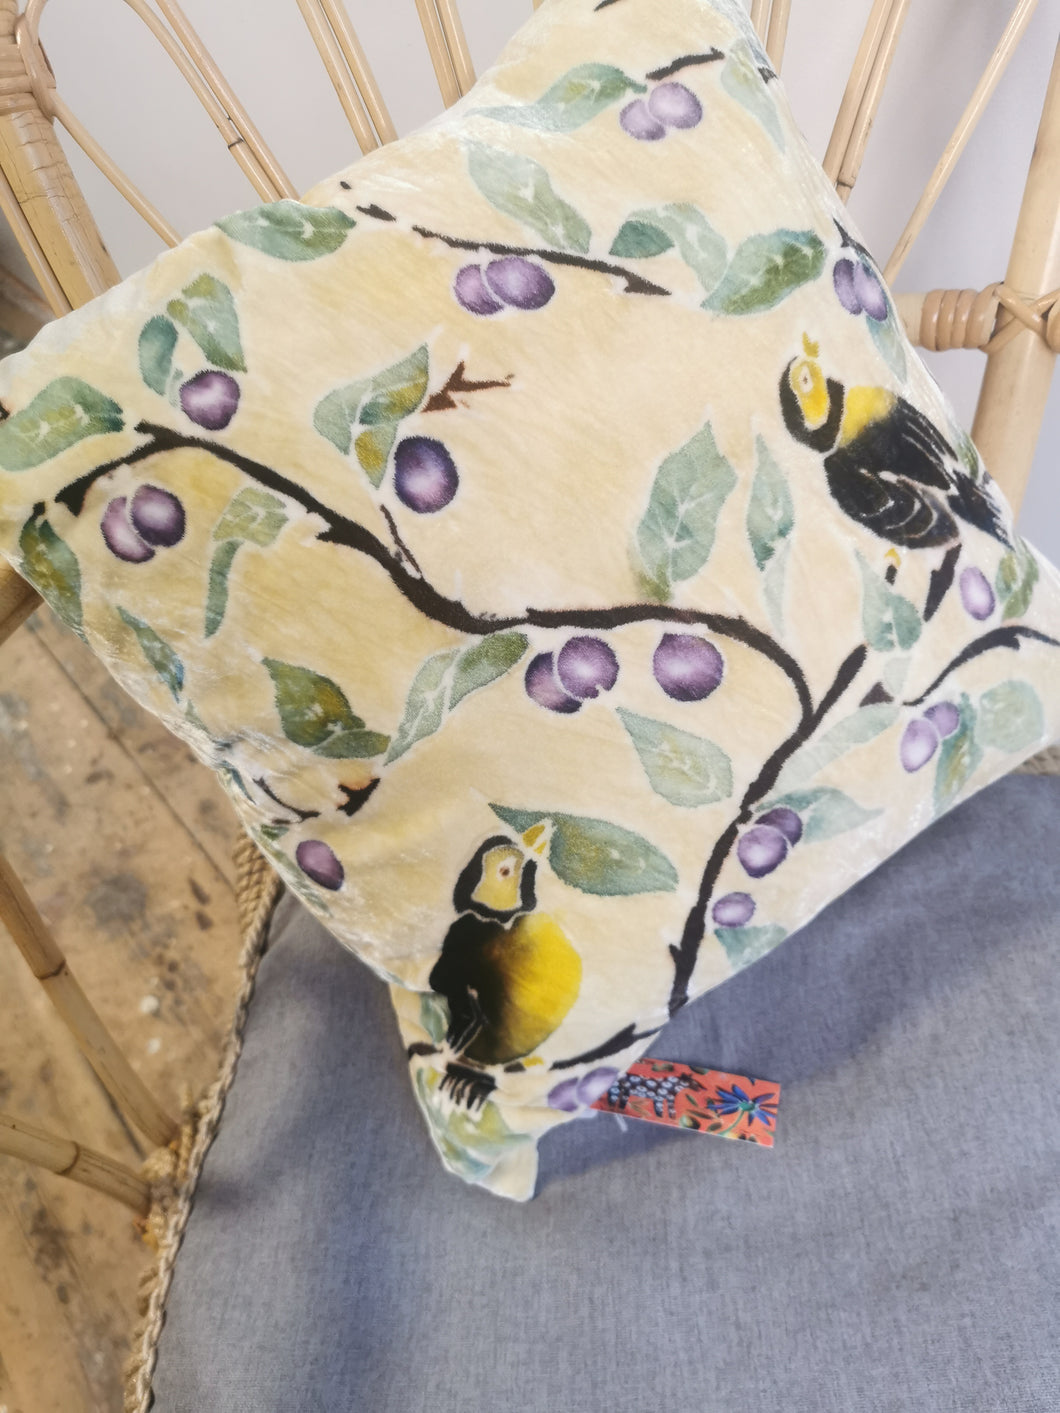 Hand-painted velvet cushions, SLOE BIRD on Lemon background.